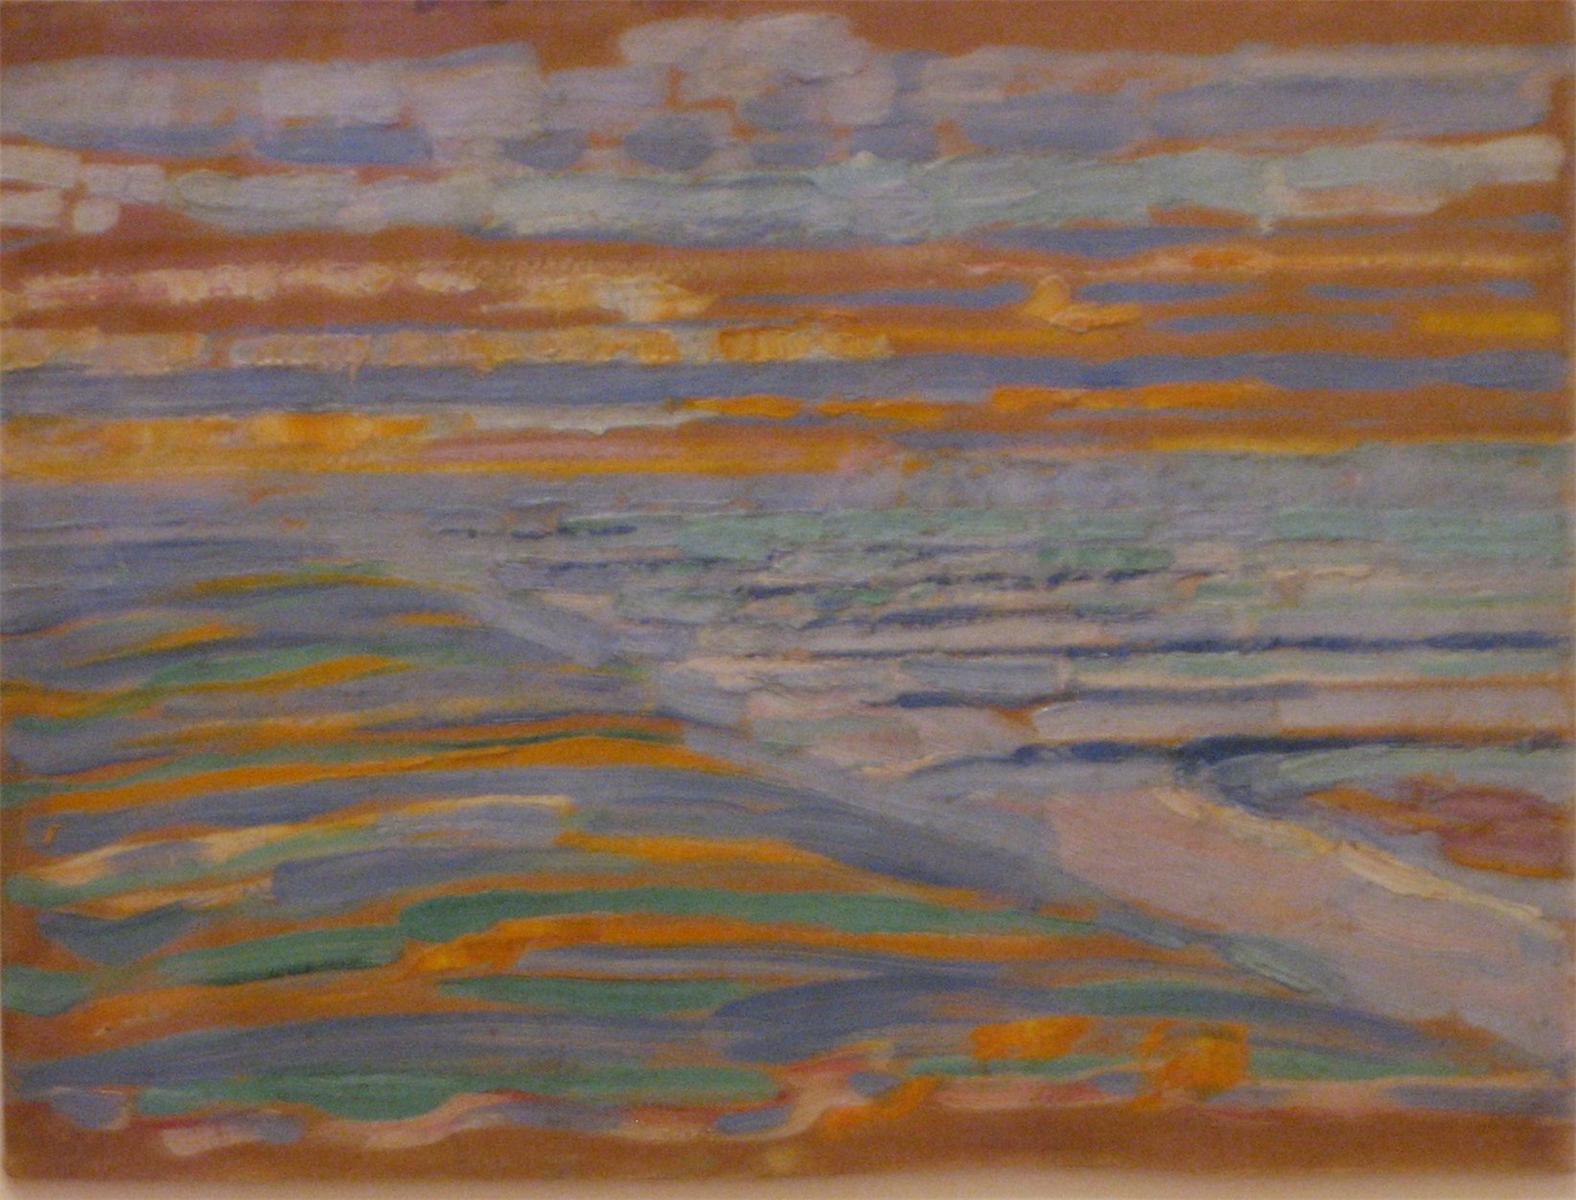 Blick von den Dünen mit Strand und Piers by Piet Mondrian - 1909 - 28.5 x 38.5 cm Museum of Modern Art